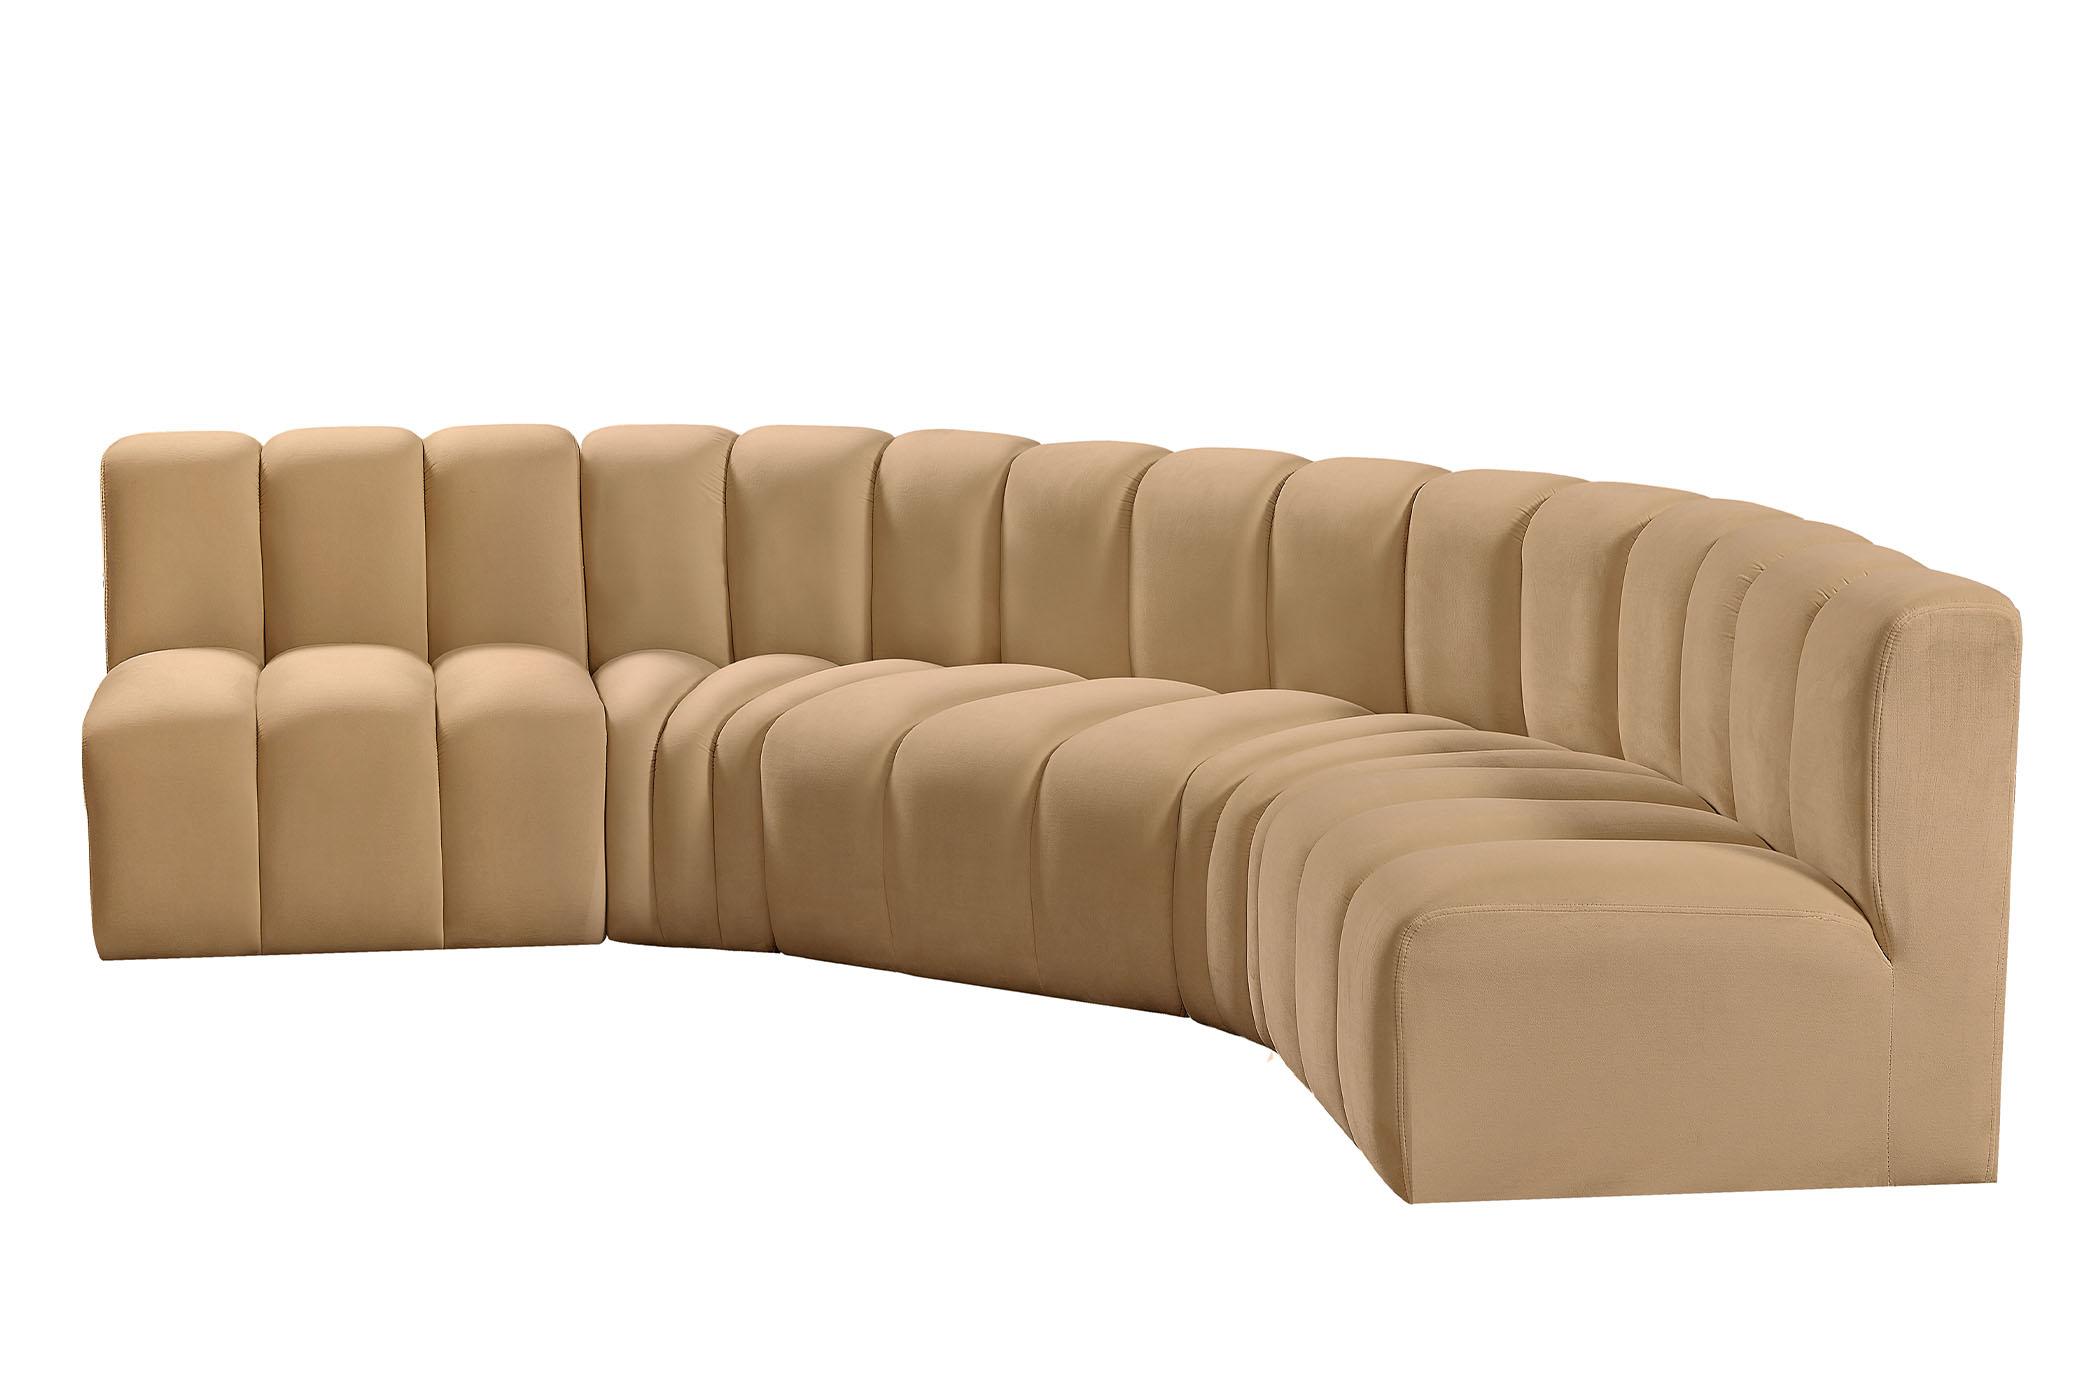 

    
103Camel-S5A Meridian Furniture Modular Sectional Sofa
